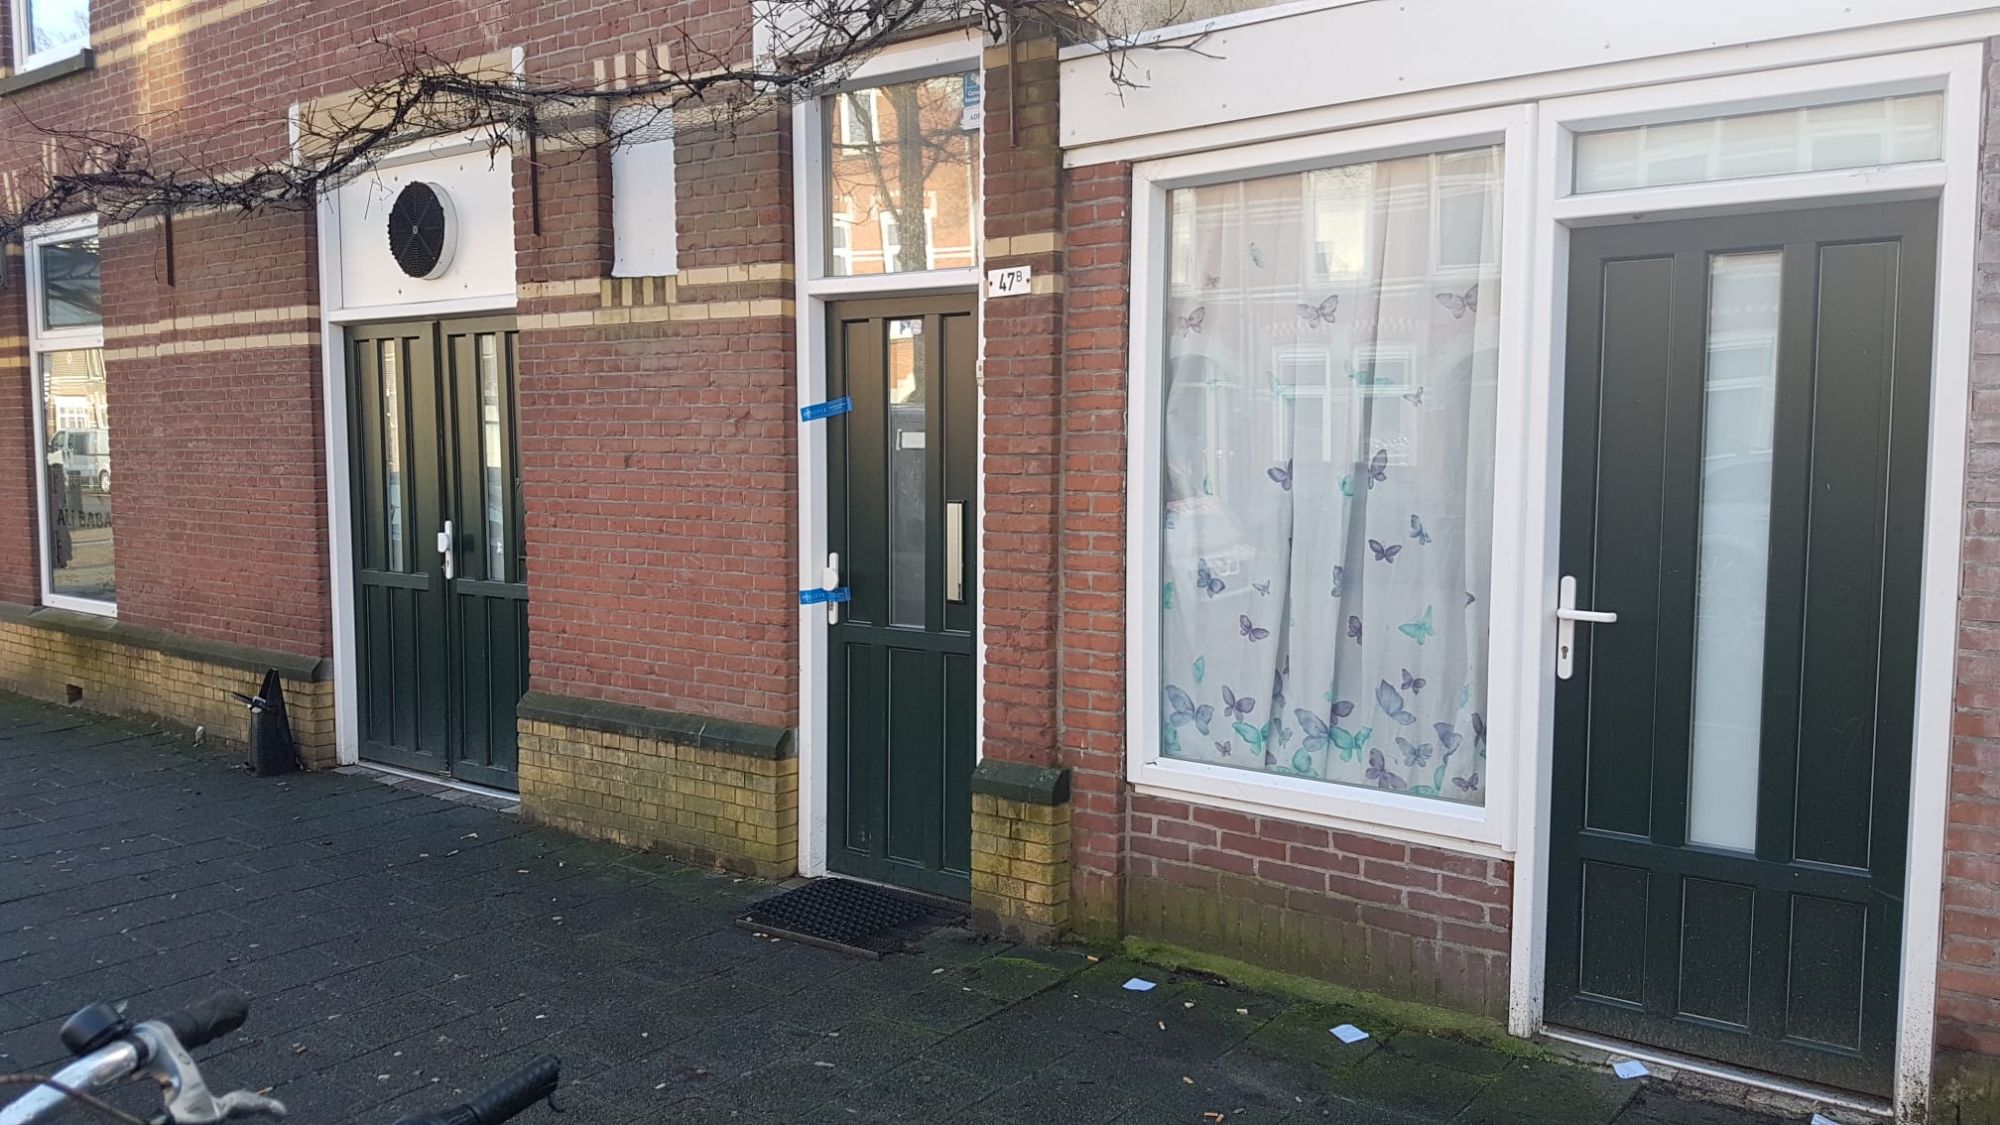 Politie niet zeker over doodsoorzaak Westfrankelandsestraat